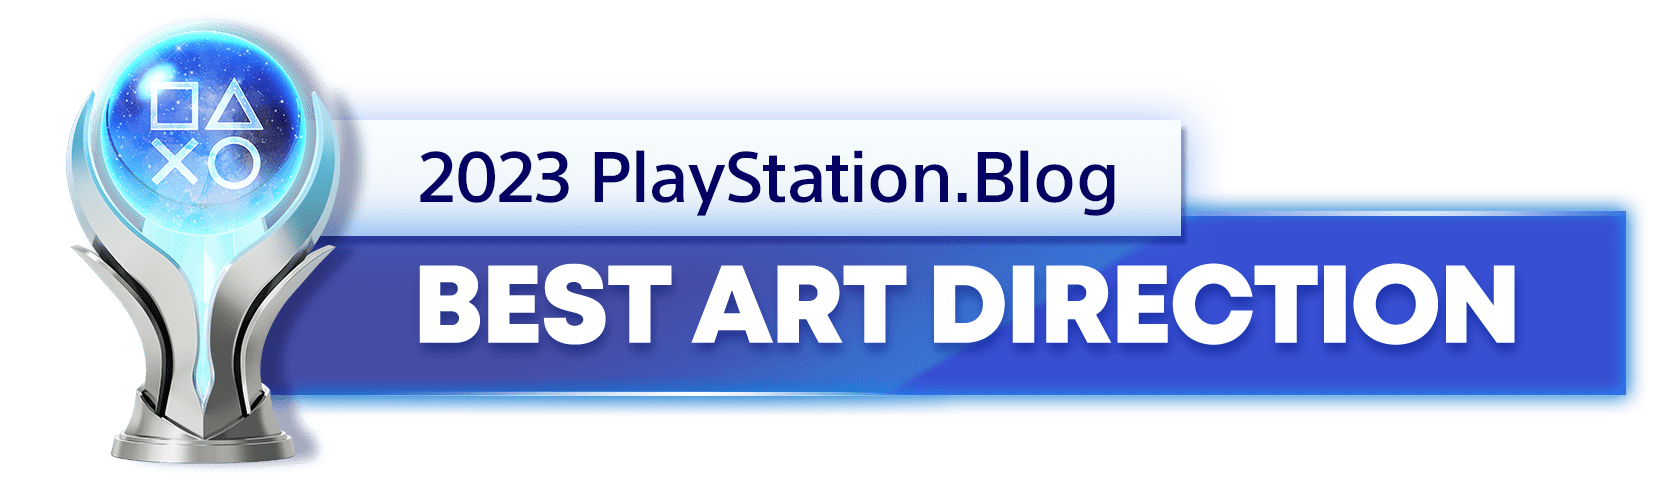 Platinum Trophy for the 2023 PlayStation Blog Best Art Direction Winner